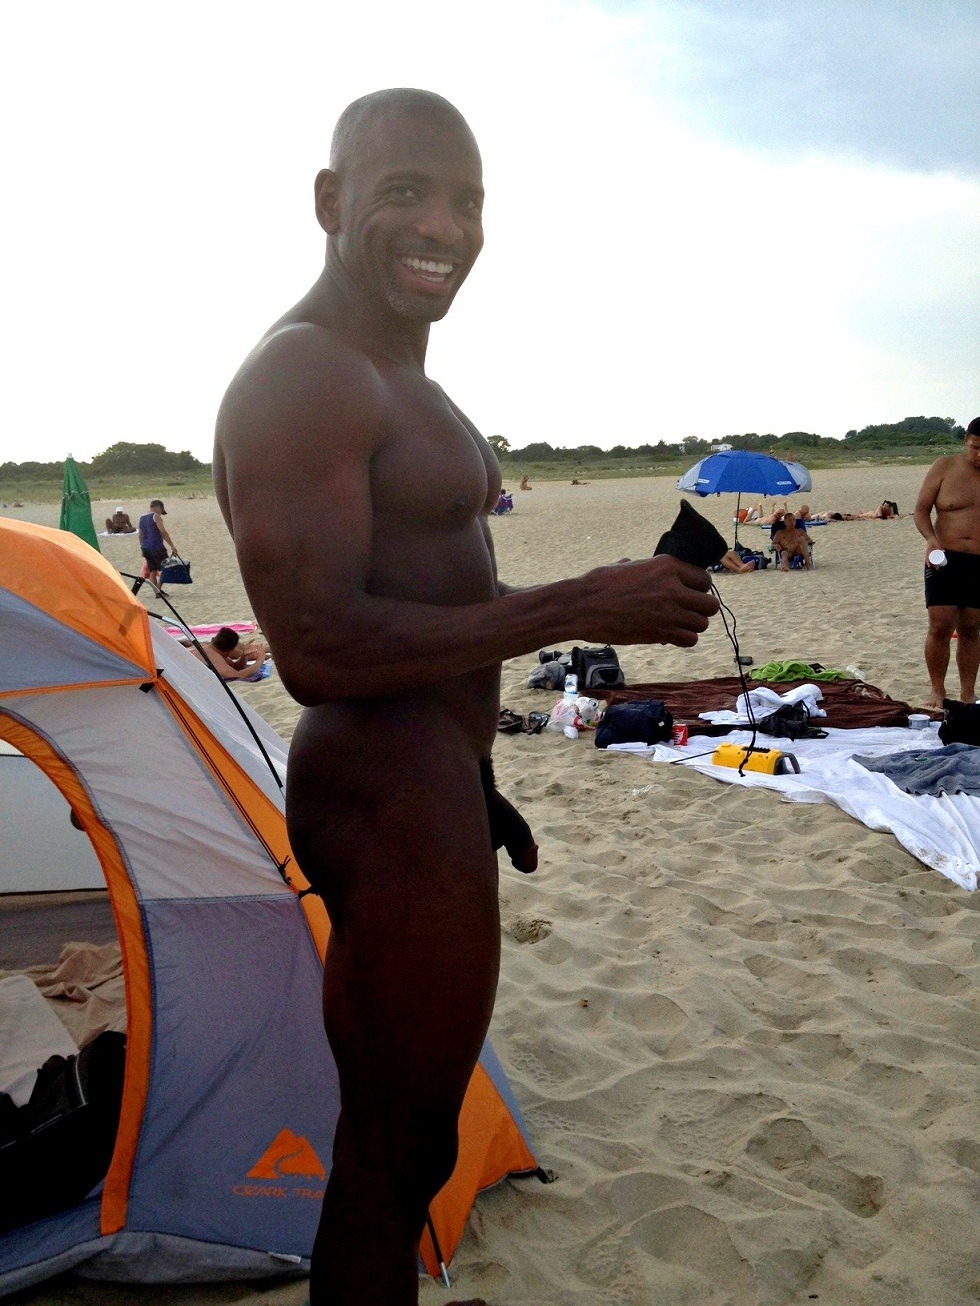 guyzbeach:

Follow my blogs:
guyzbeach: a collection of natural men naked at the beach
guyzwoods: a collection of natural men naked in wild spaces
